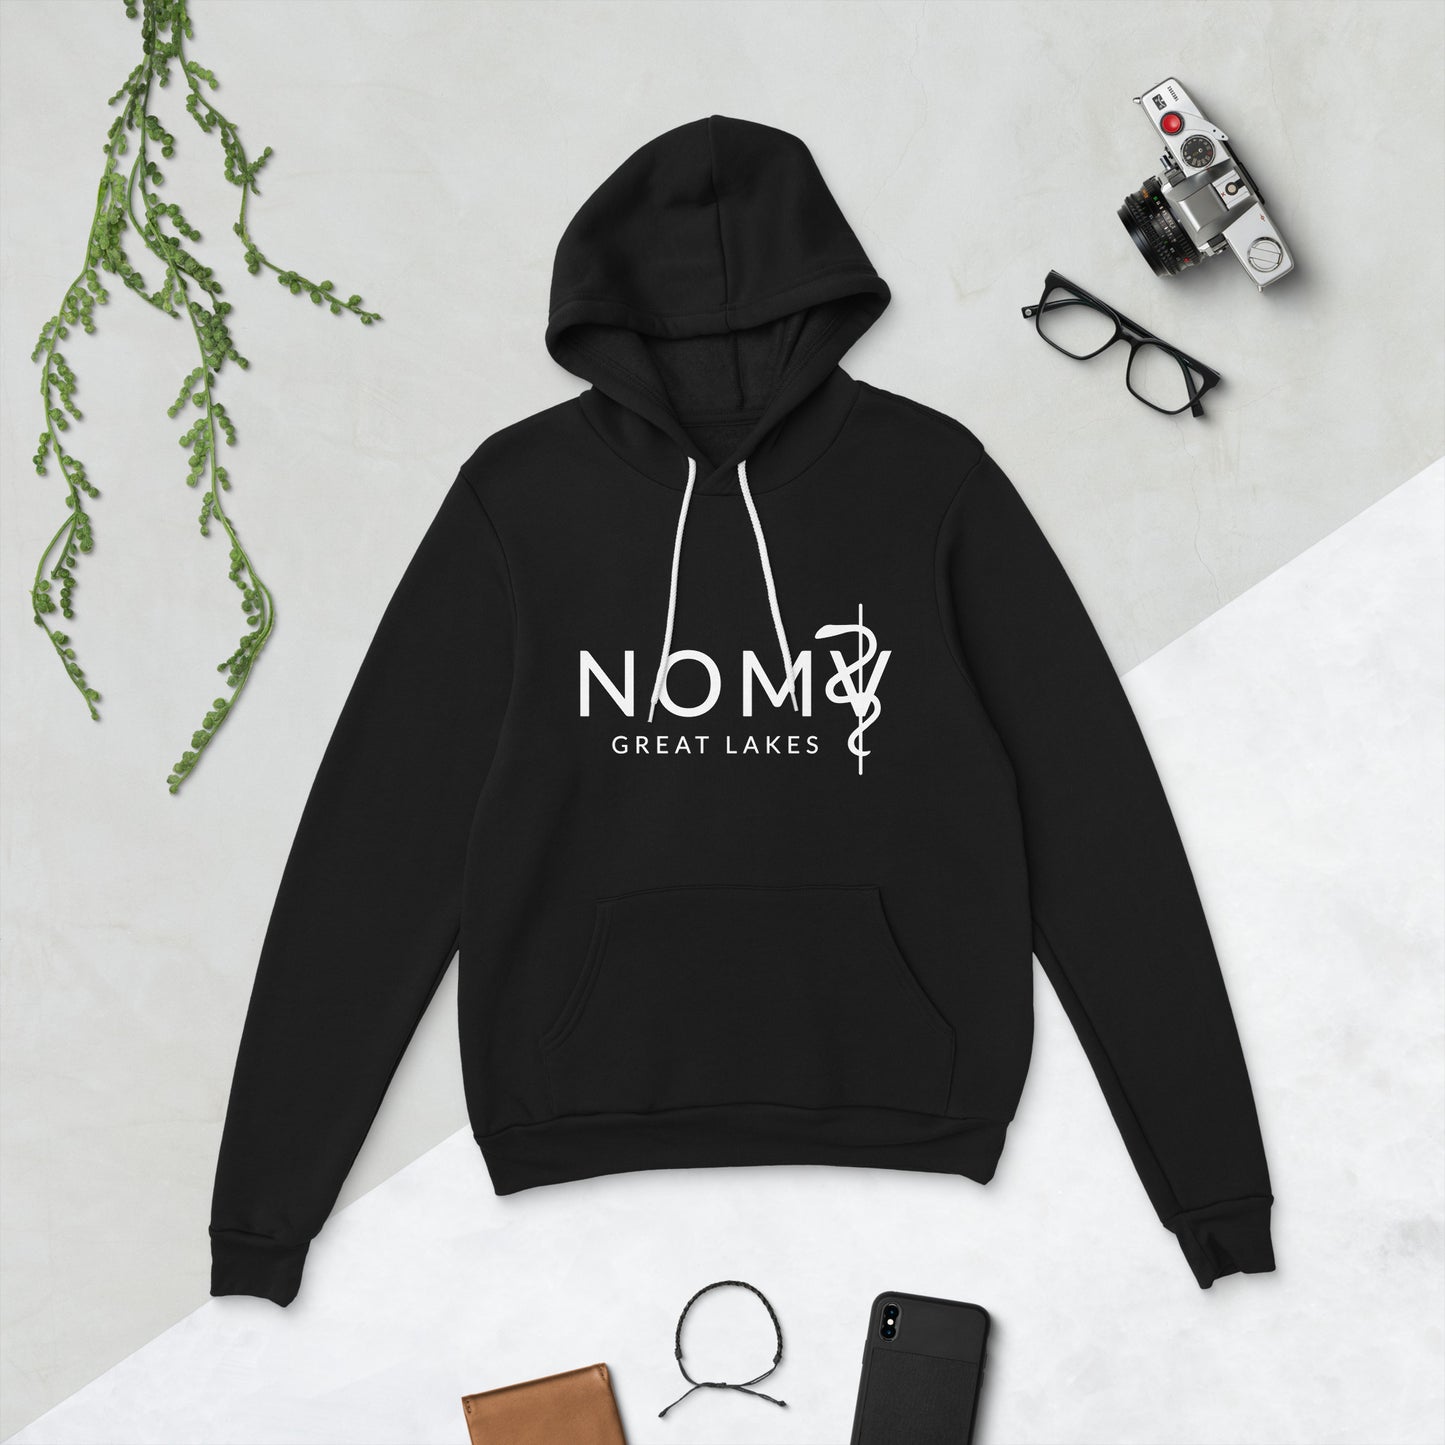 NOMV Great Lakes - Unisex hoodie